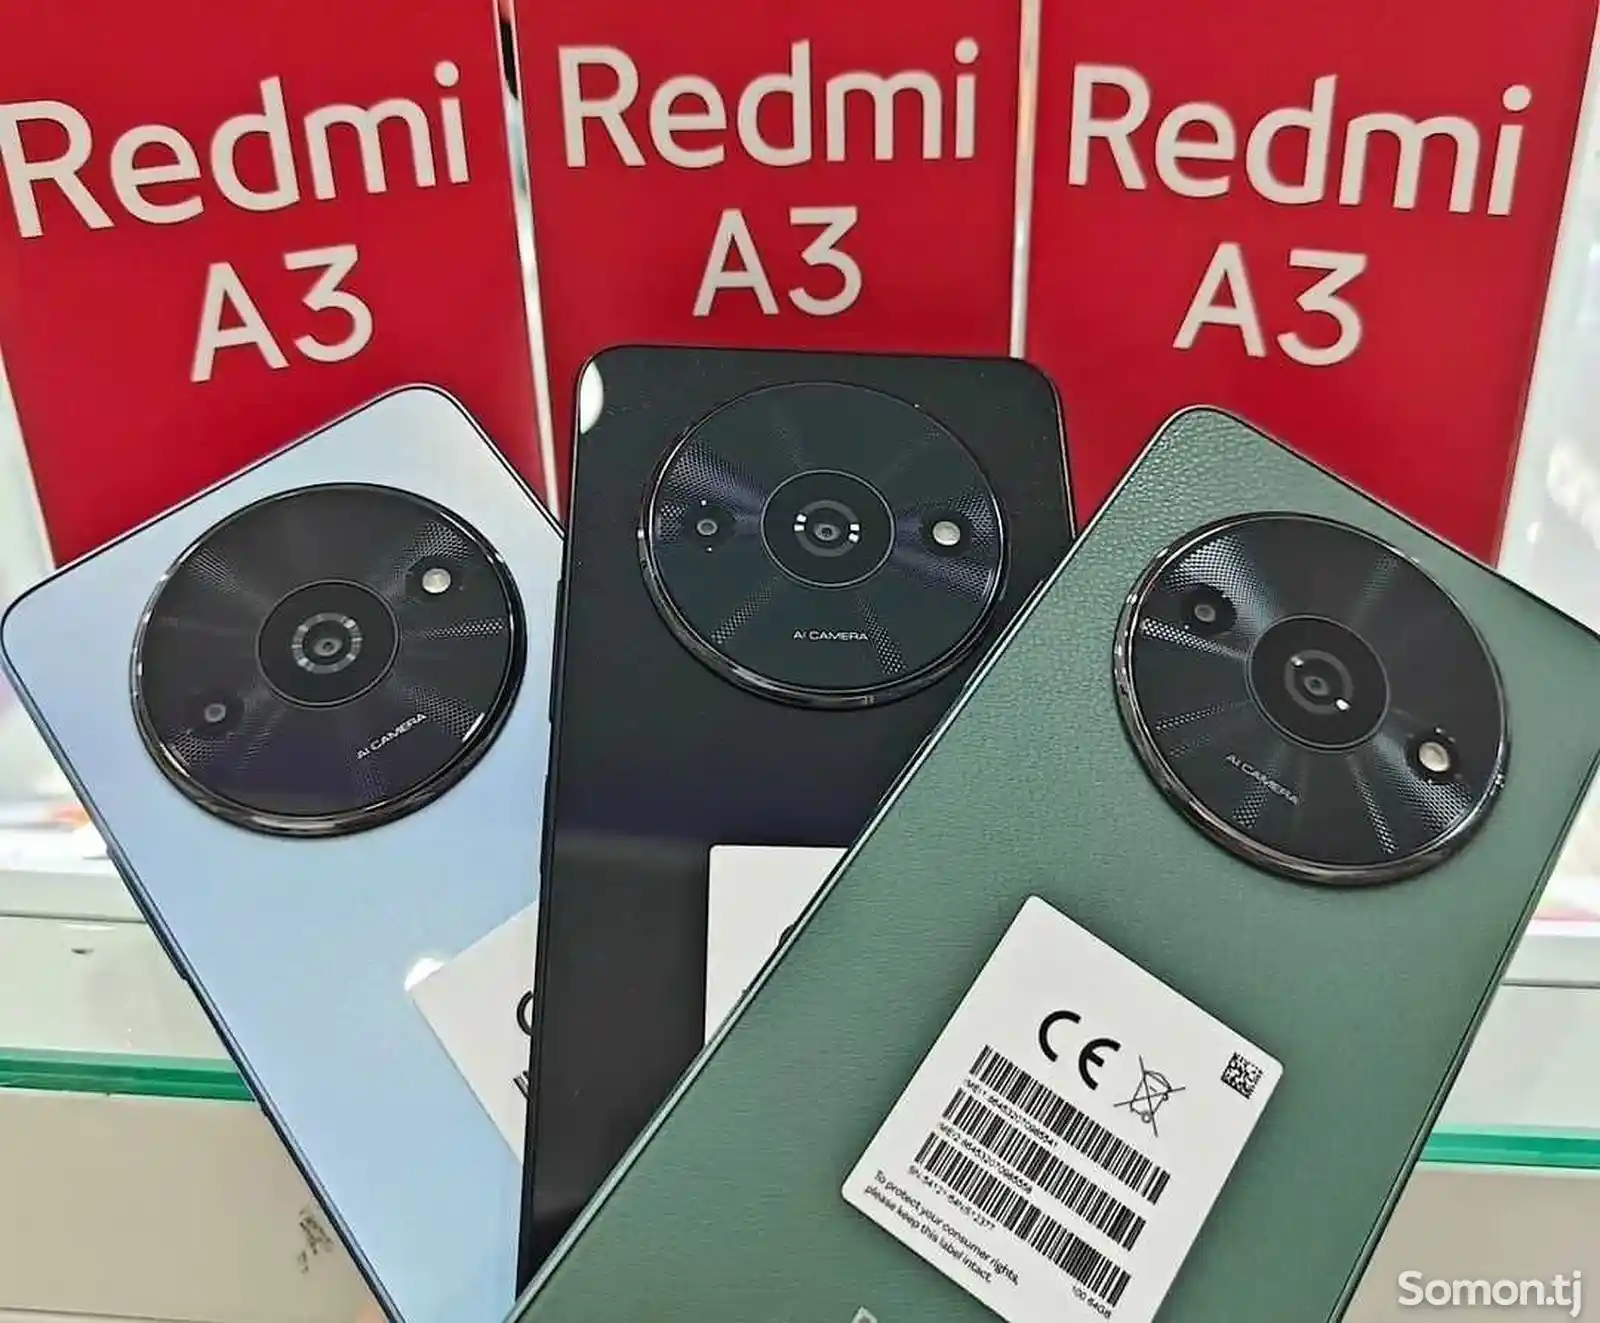 Xiaomi Redmi A3-1